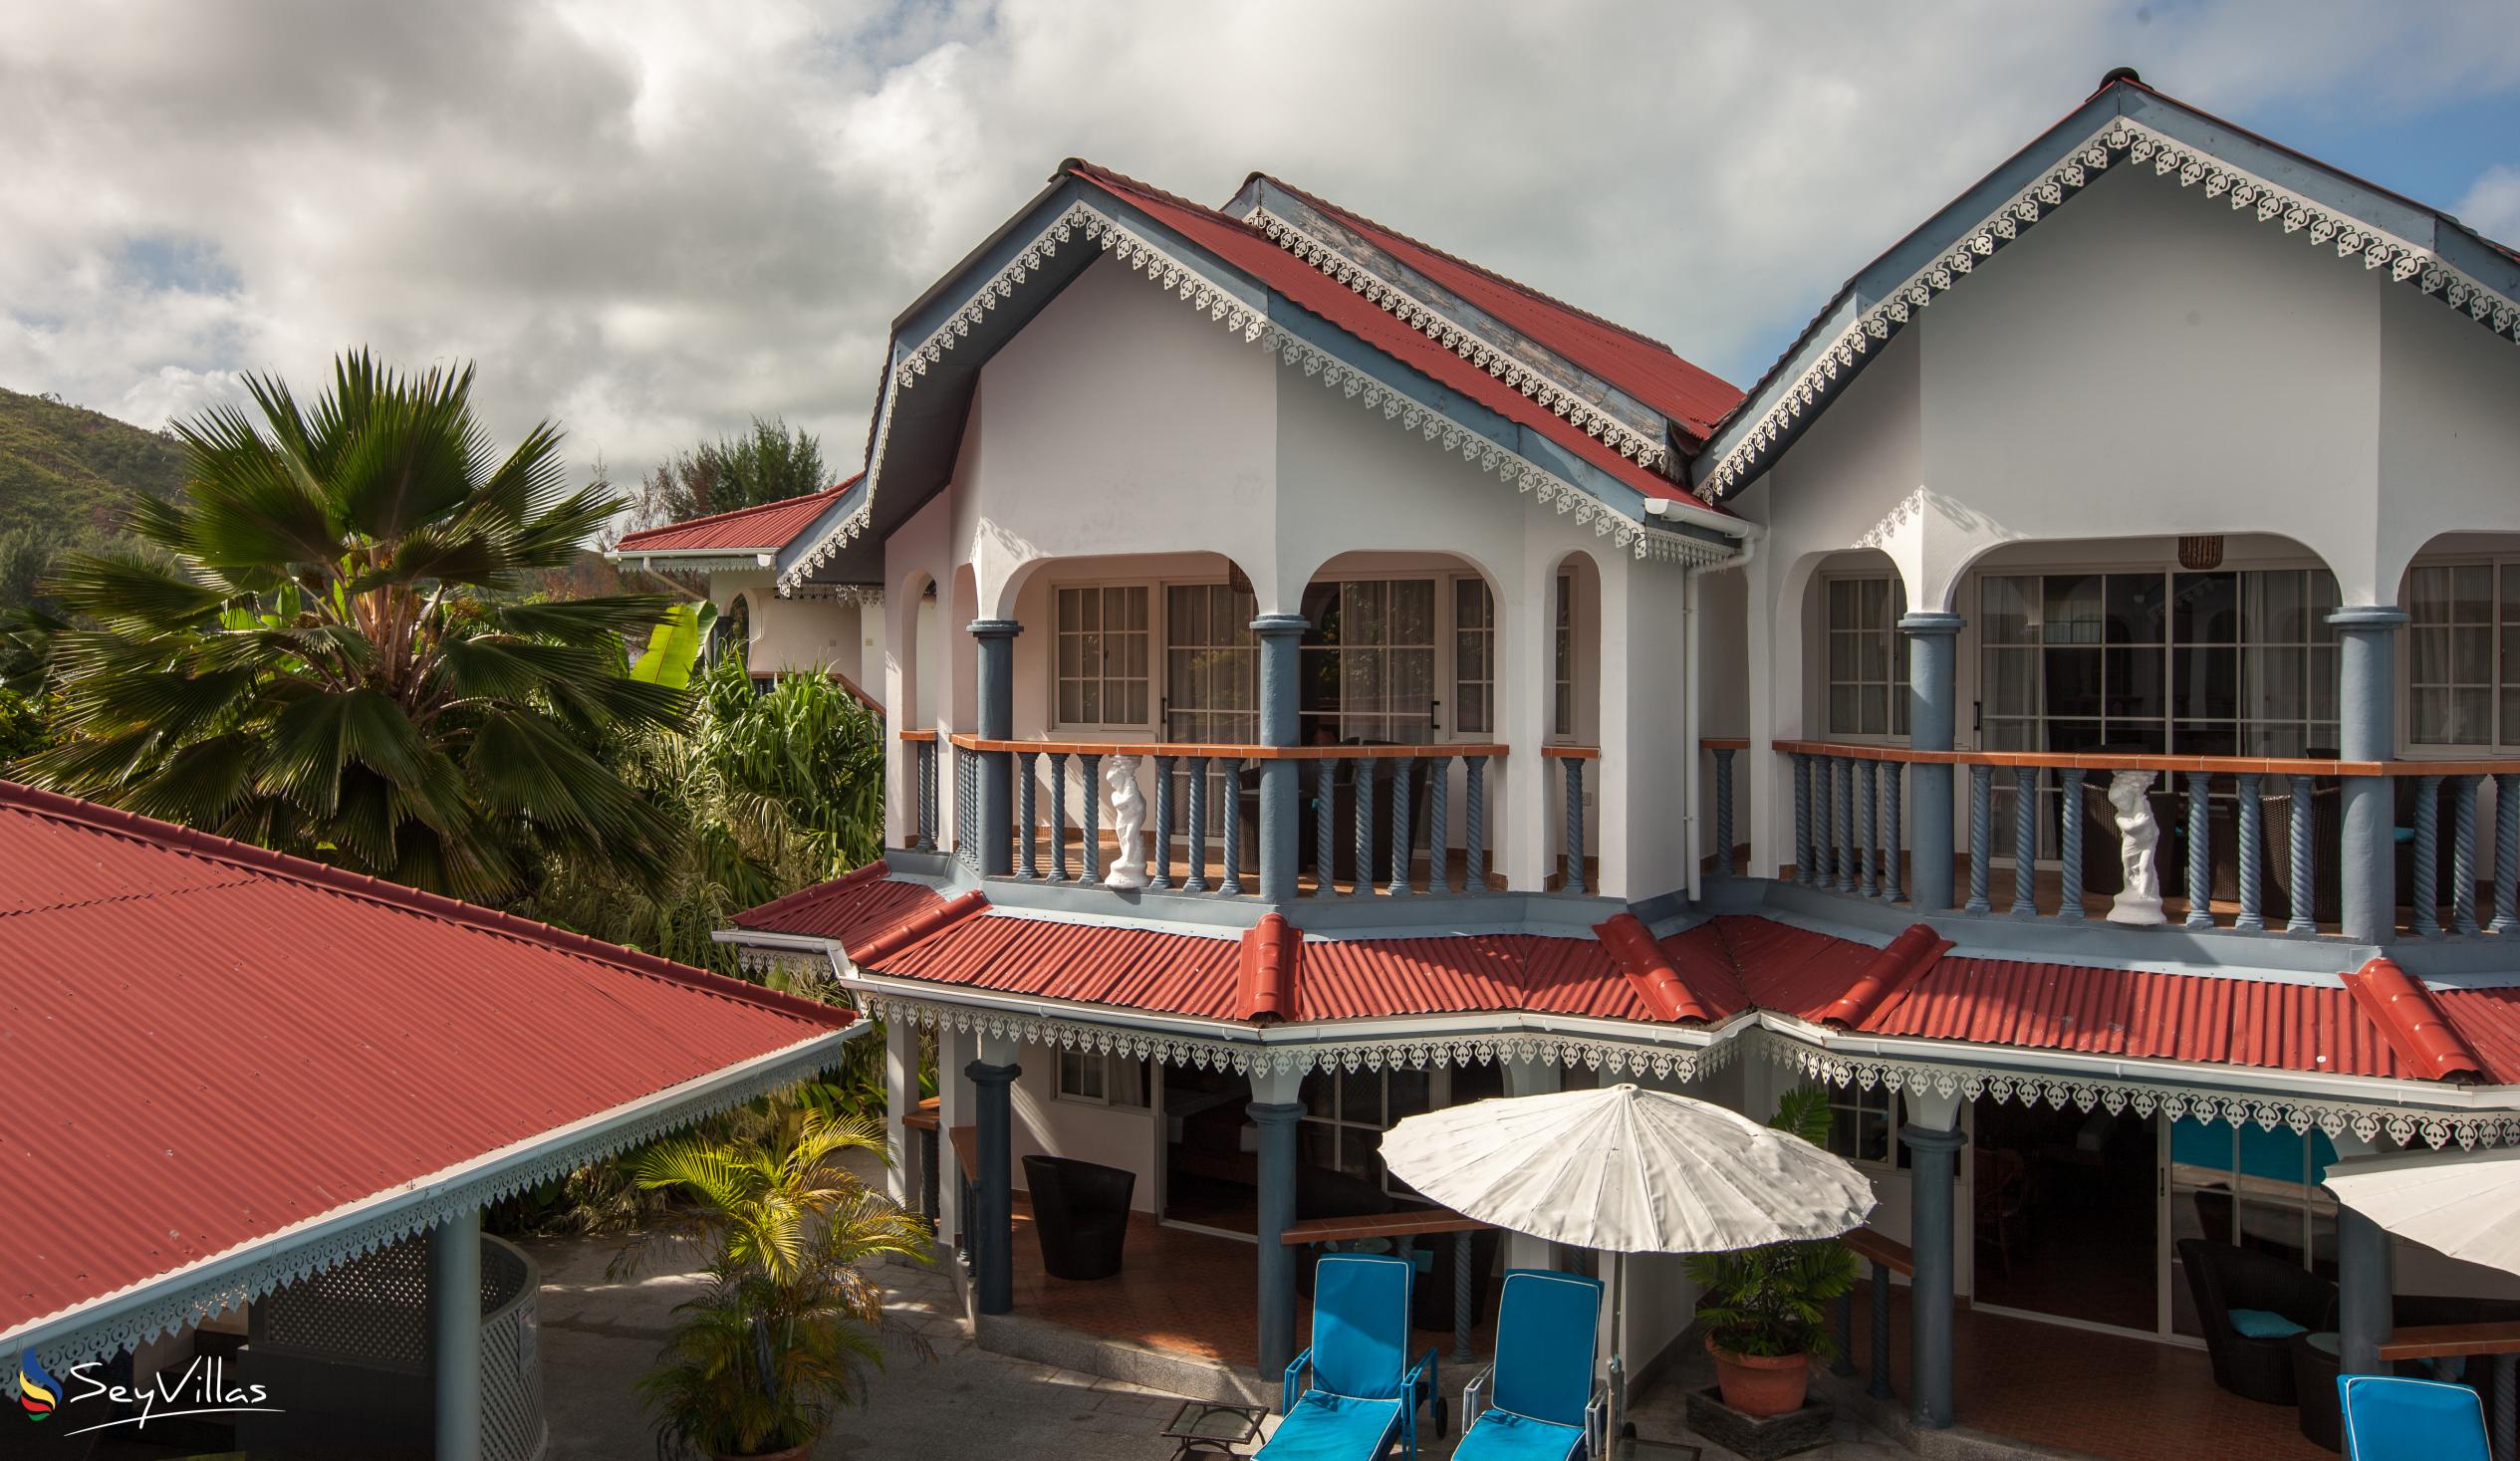 Foto 5: Chateau Sans Souci - Aussenbereich - Praslin (Seychellen)